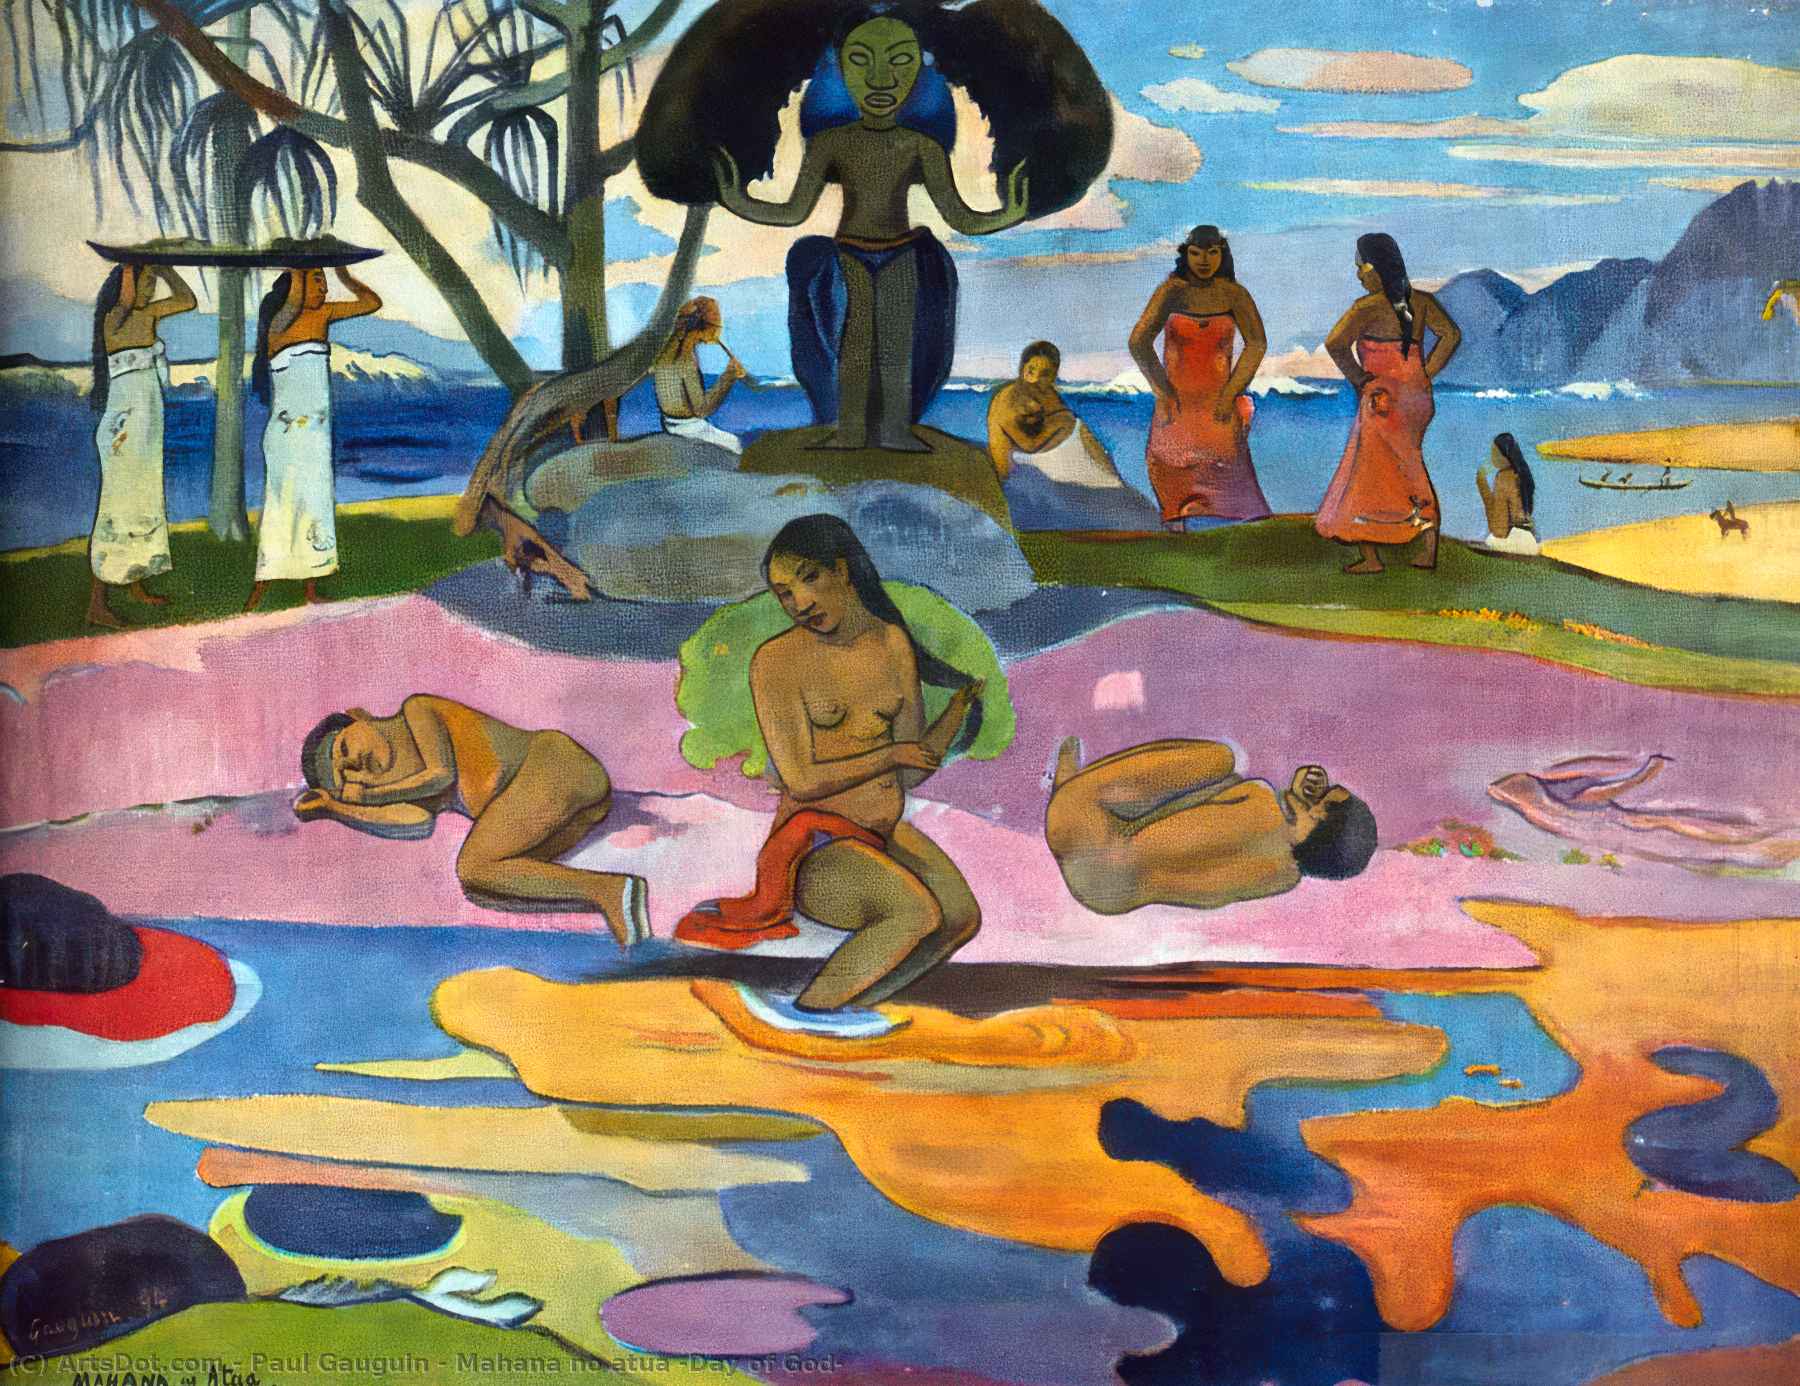 WikiOO.org - Encyclopedia of Fine Arts - Maalaus, taideteos Paul Gauguin - Mahana no atua (Day of God)